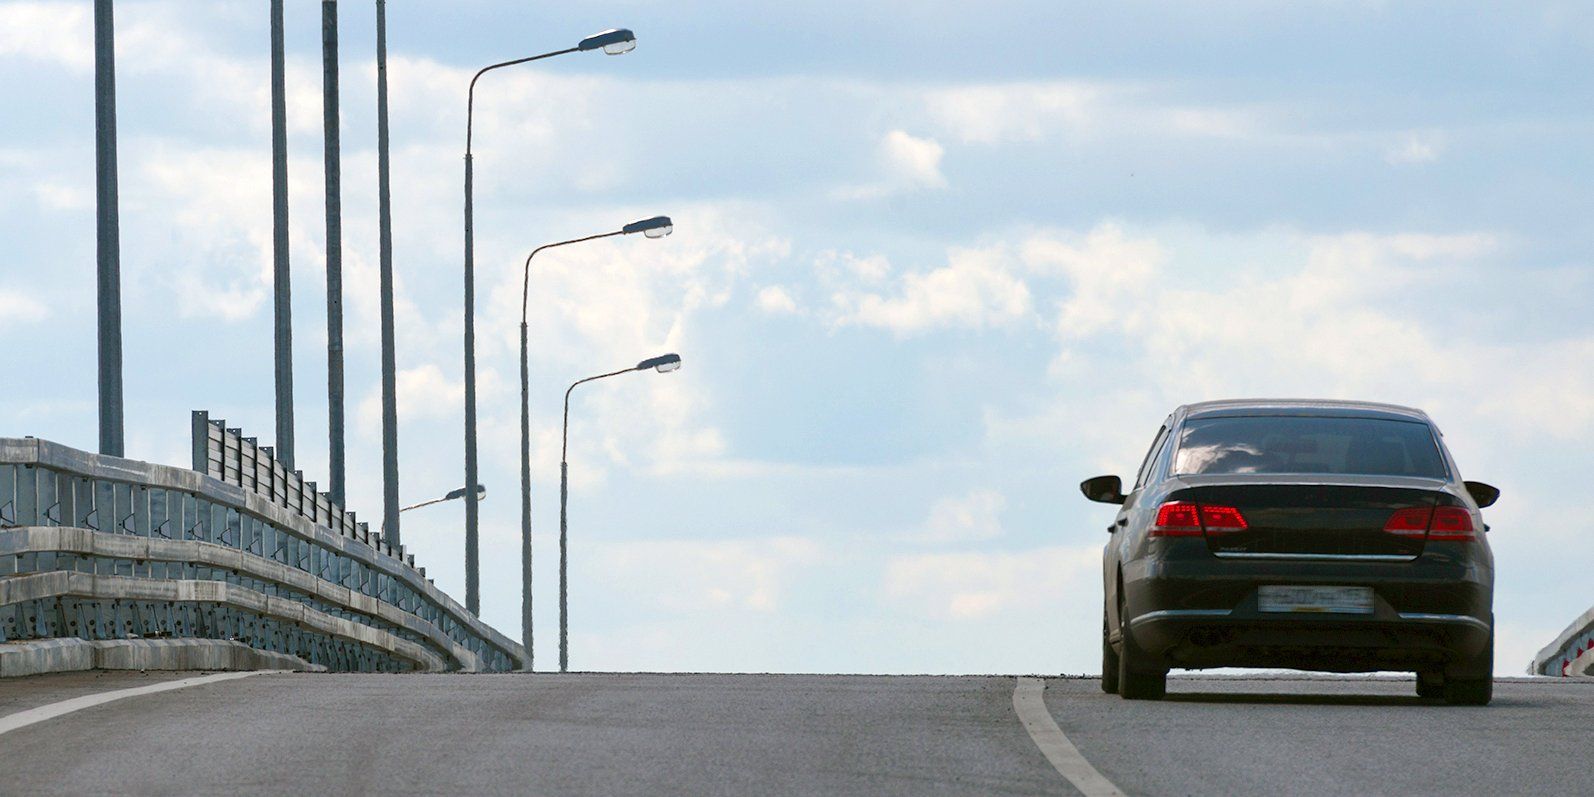 Обновленная улично-дорожная сеть улучшит транспортную доступность районов. Фото: сайт мэра Москвы